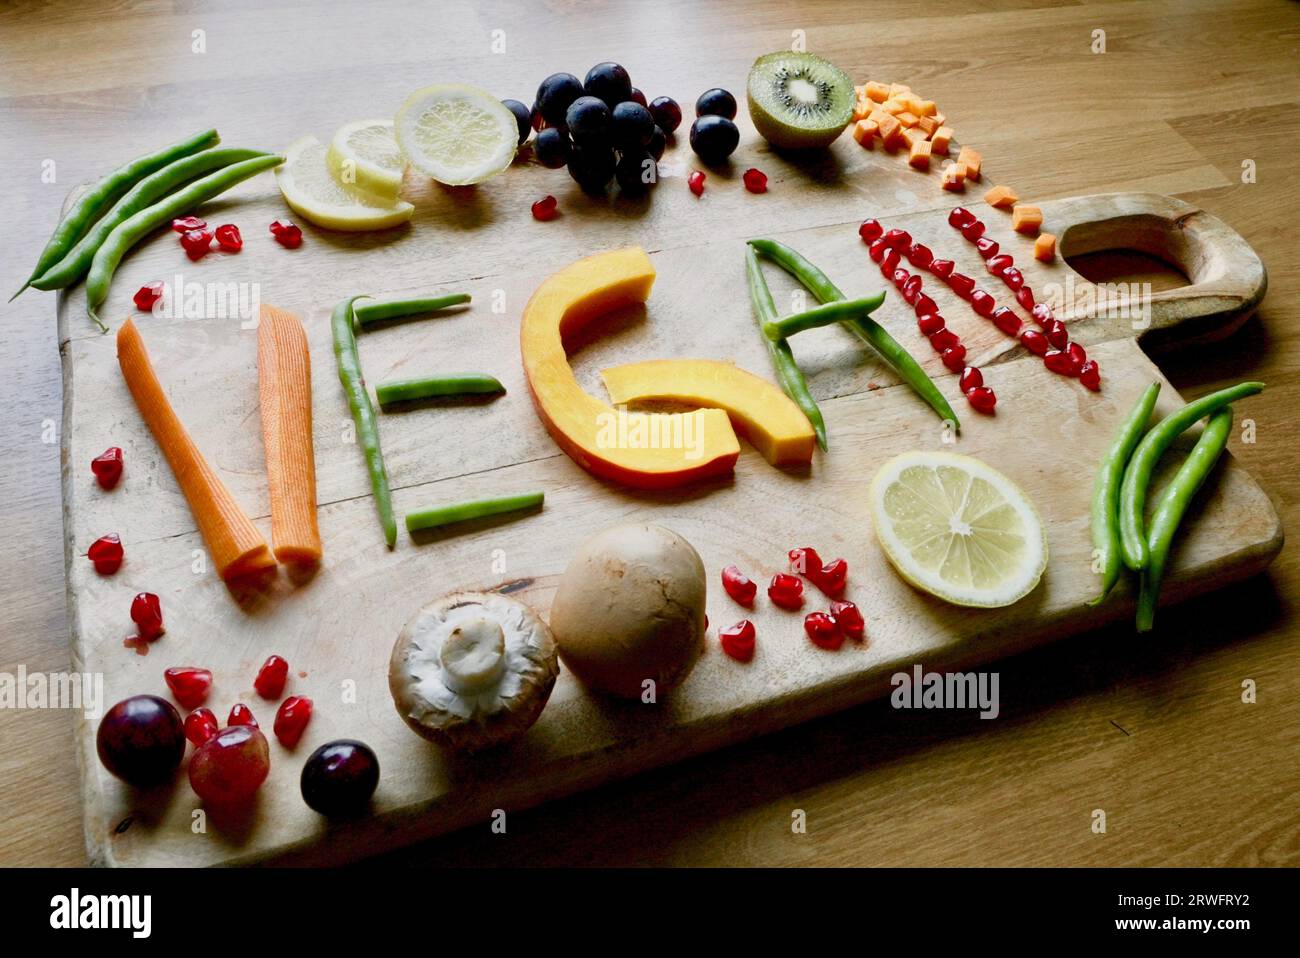 Vegane Ernährung enthält viel Obst, Gemüse und rohkost Stock Photo